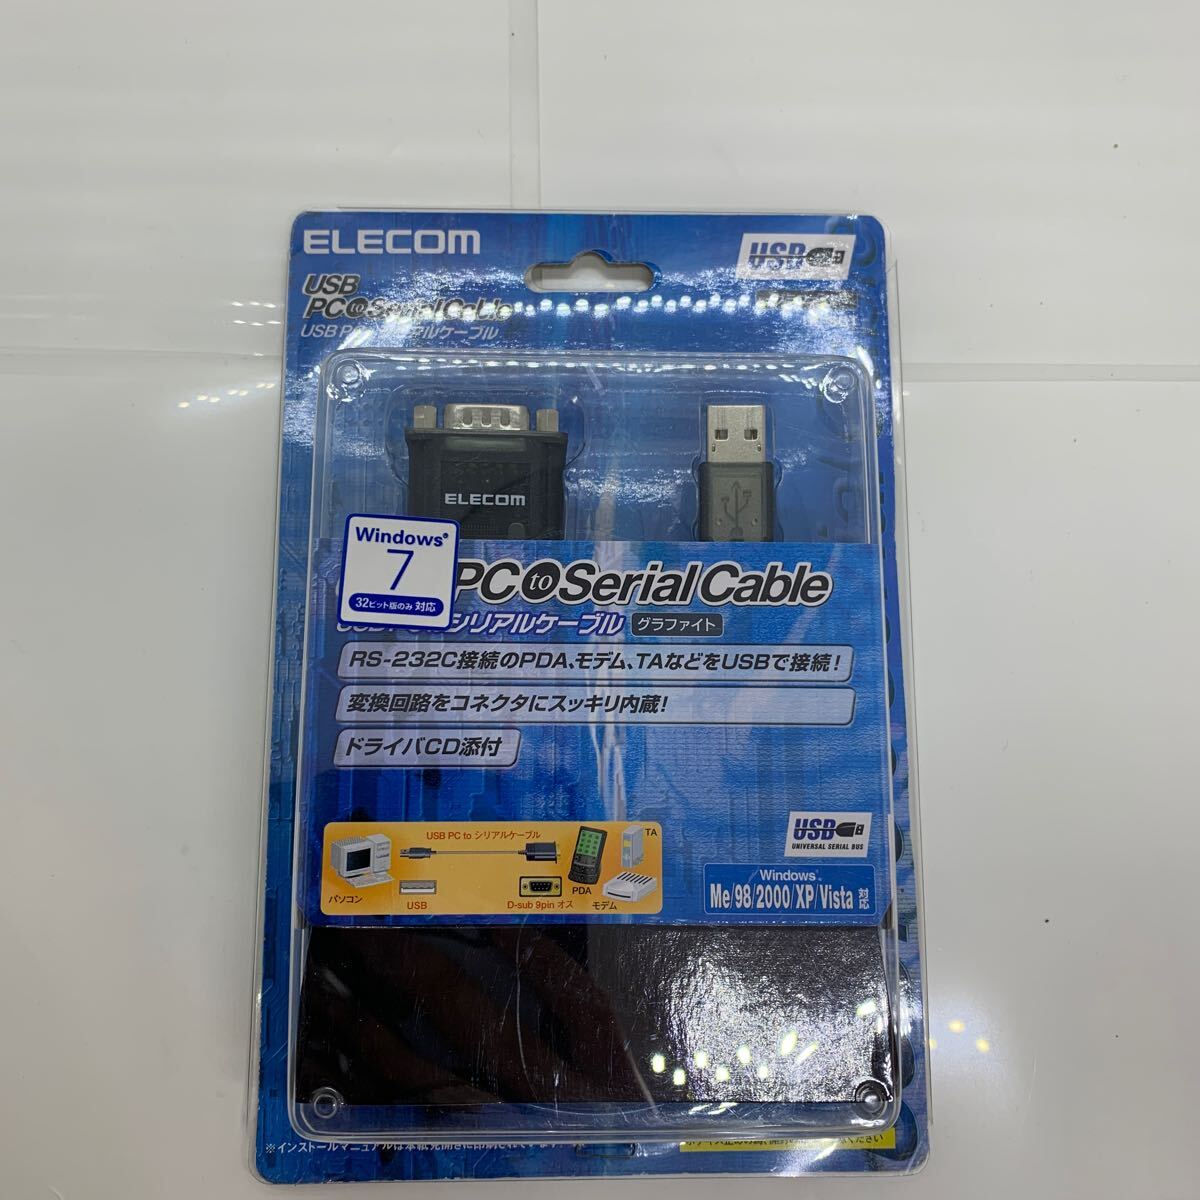 (517-9)ELECOM Elecom USB to серийный кабель [UC-SGT] RS-232C изменение товары долгосрочного хранения текущее состояние распродажа практическое применение возможен person 